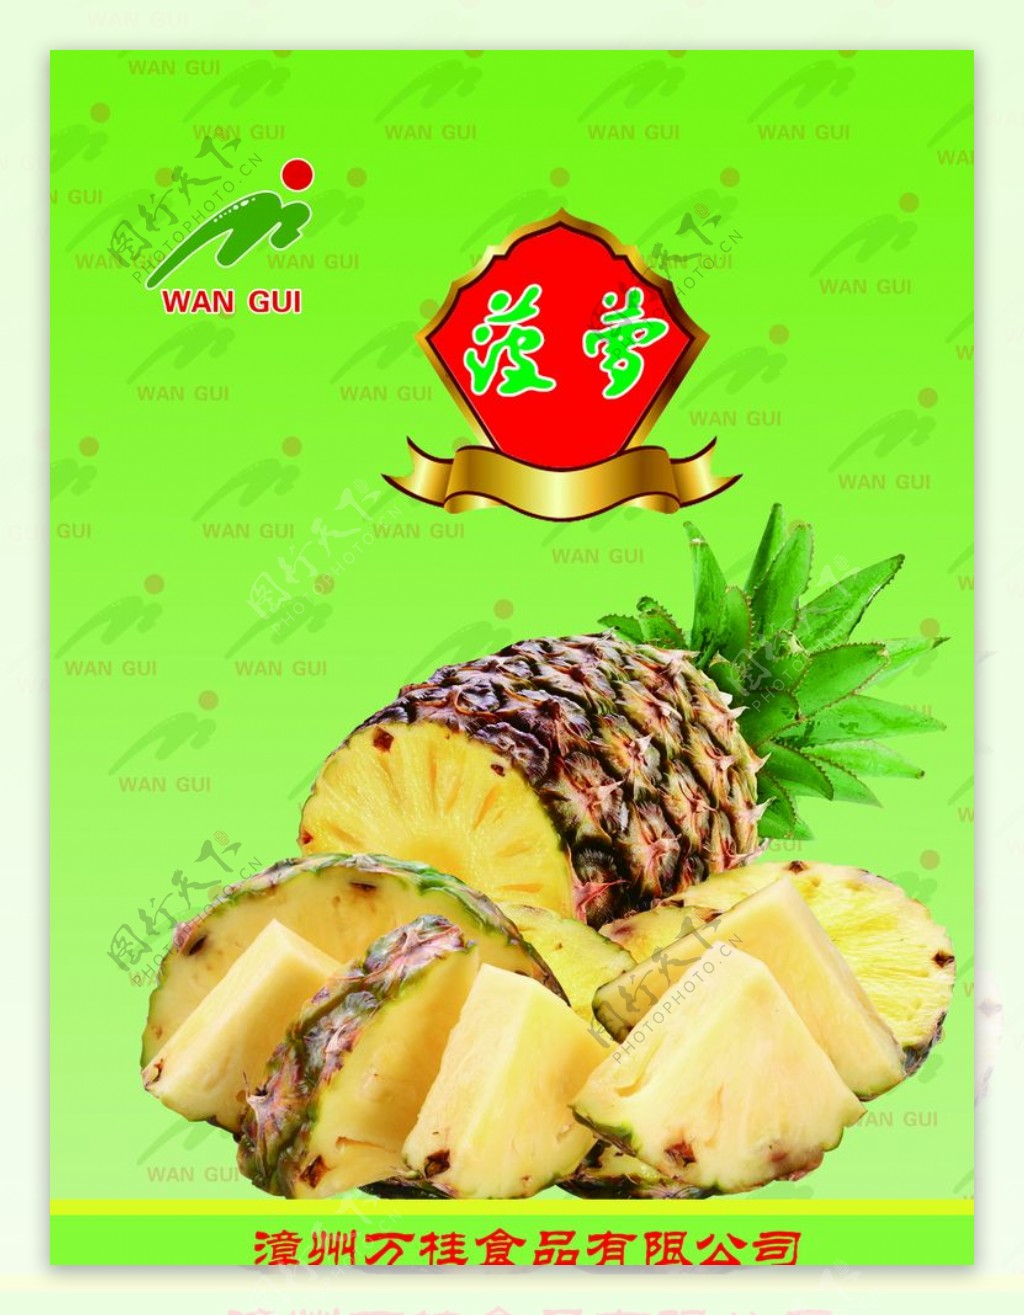 菠萝包装设计图片